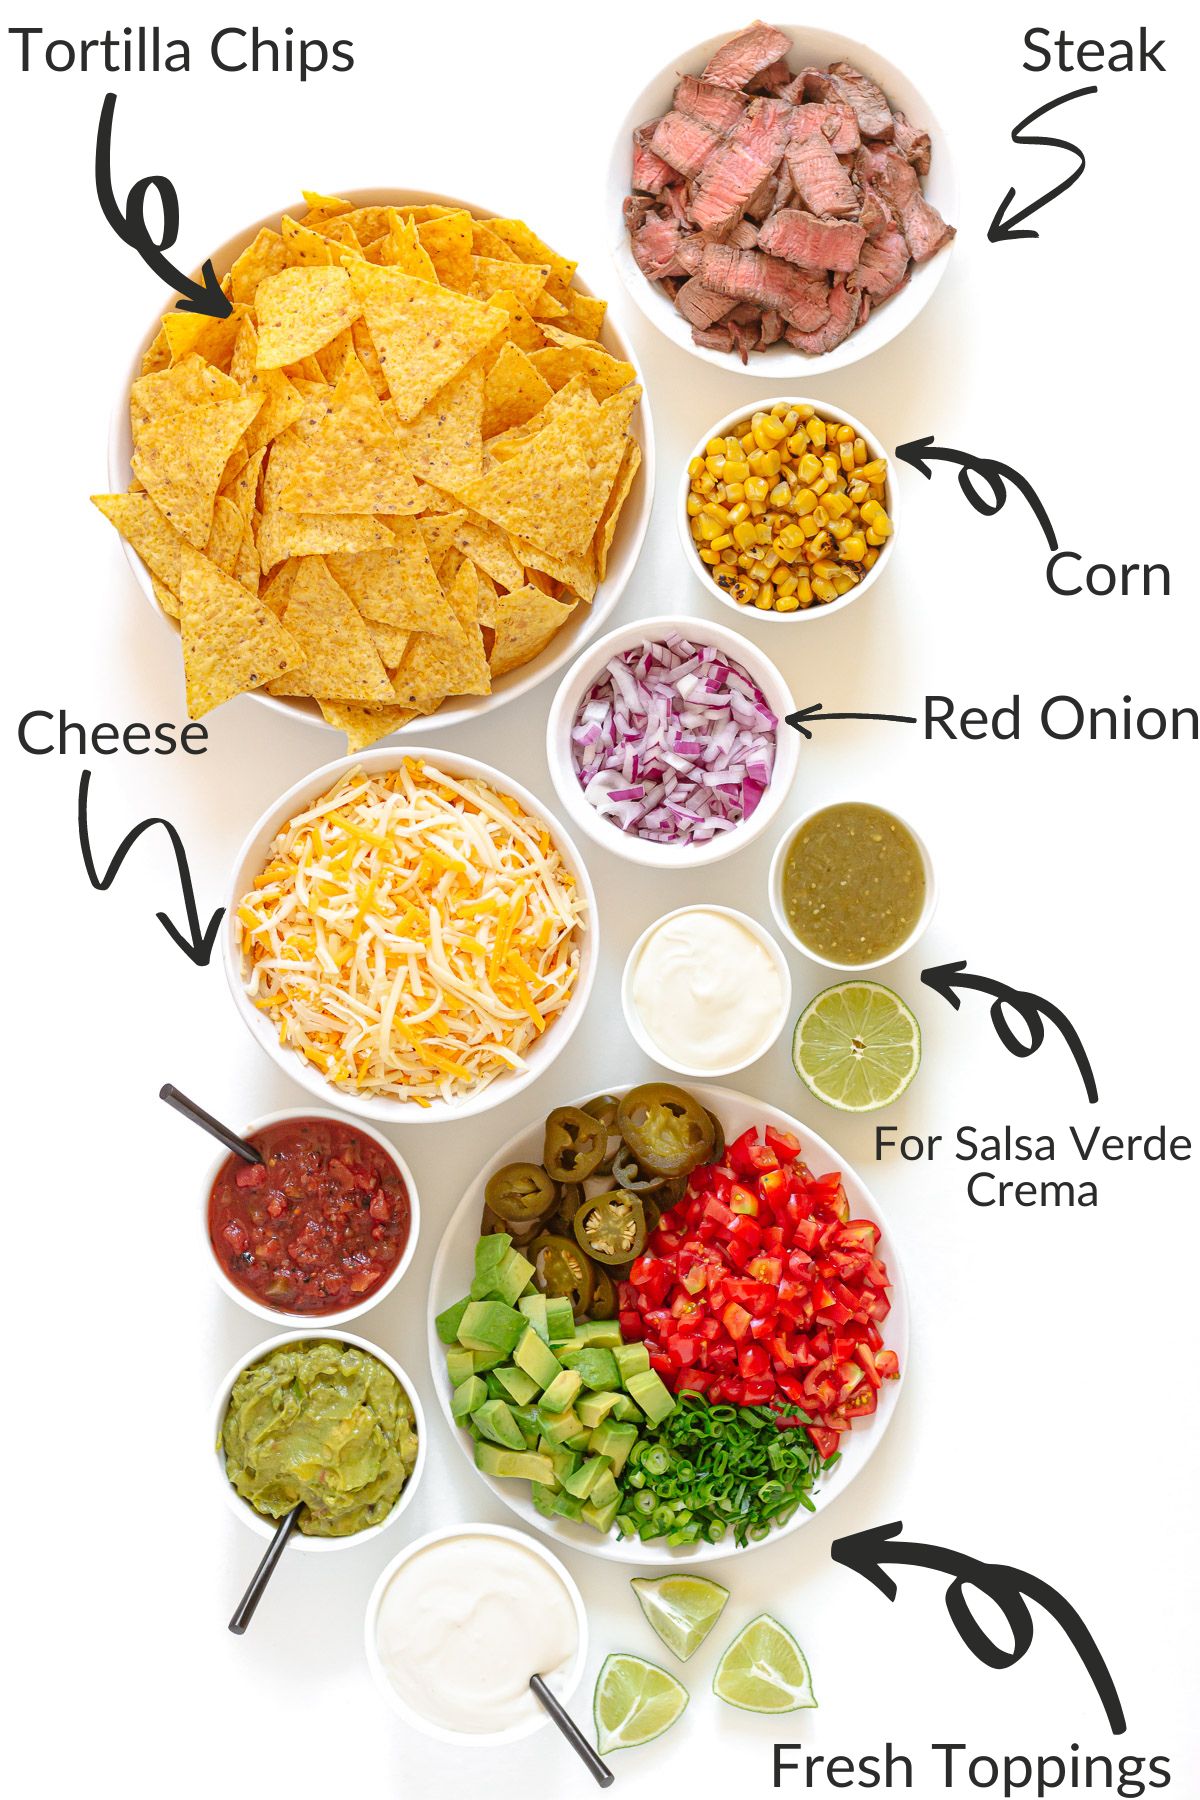 Labelled photo of ingredients needed to make steak nachos.